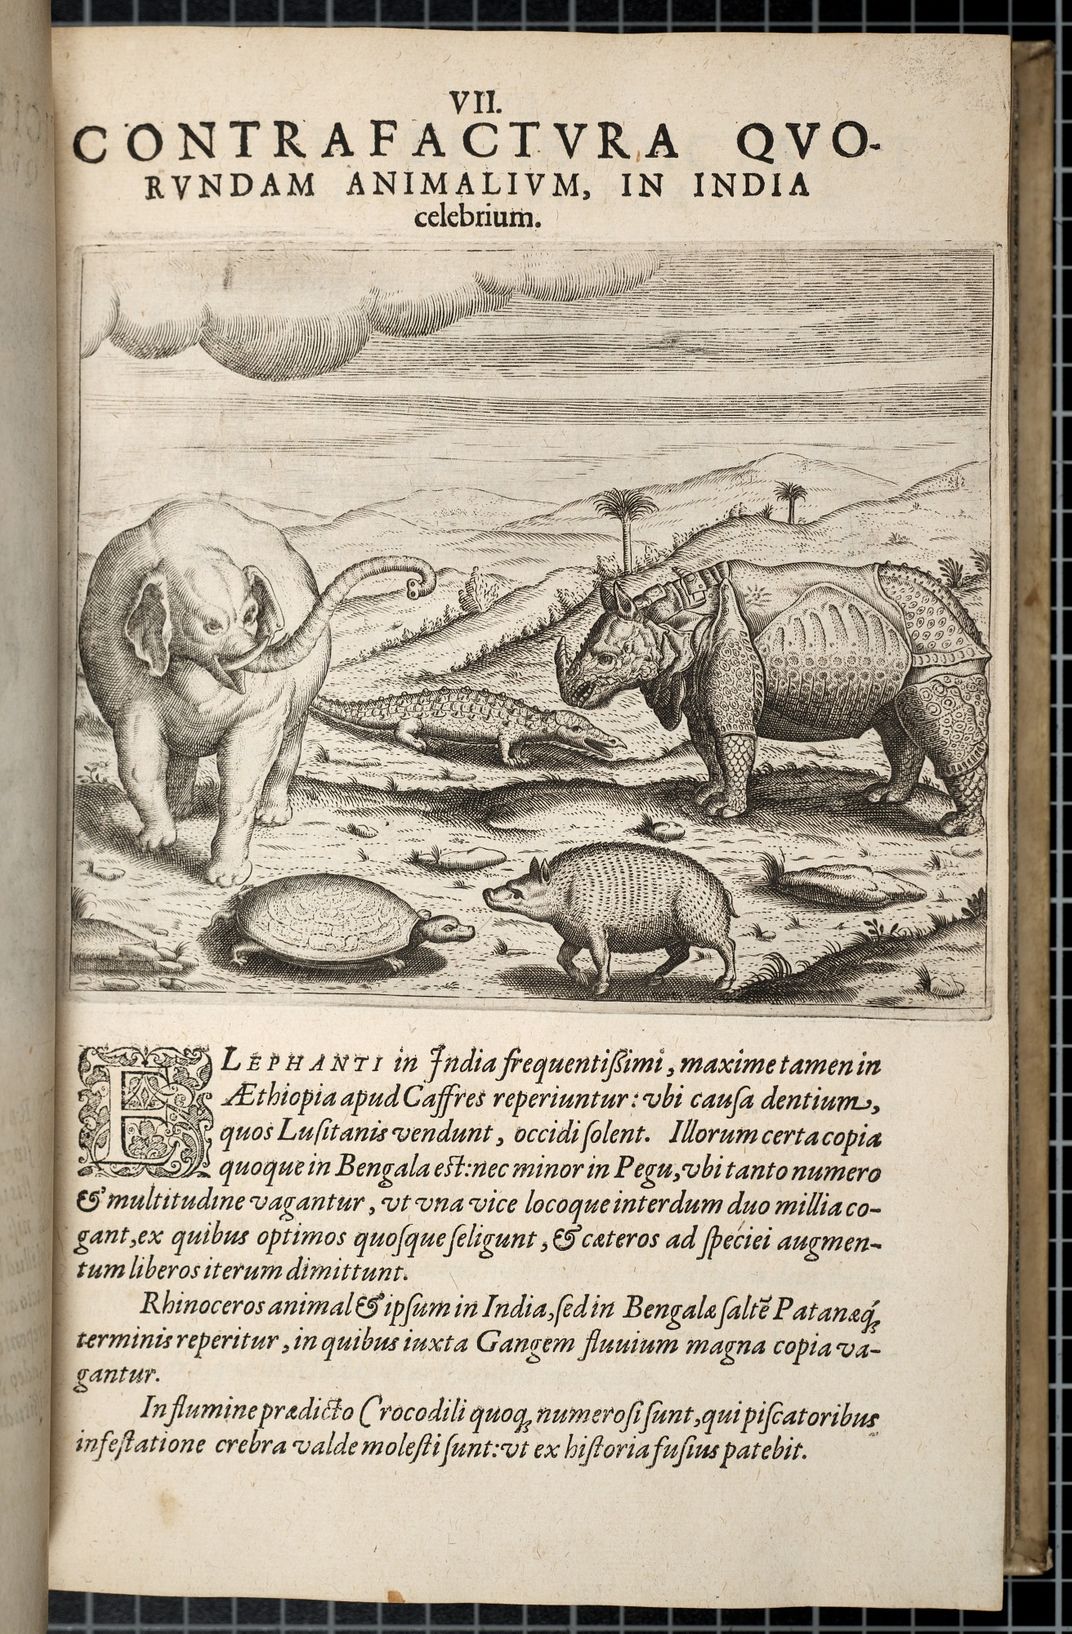 Illustration d'histoire naturelle du XVIe siècle avec éléphant, alligator, rhinocéros, tortue et verrue.